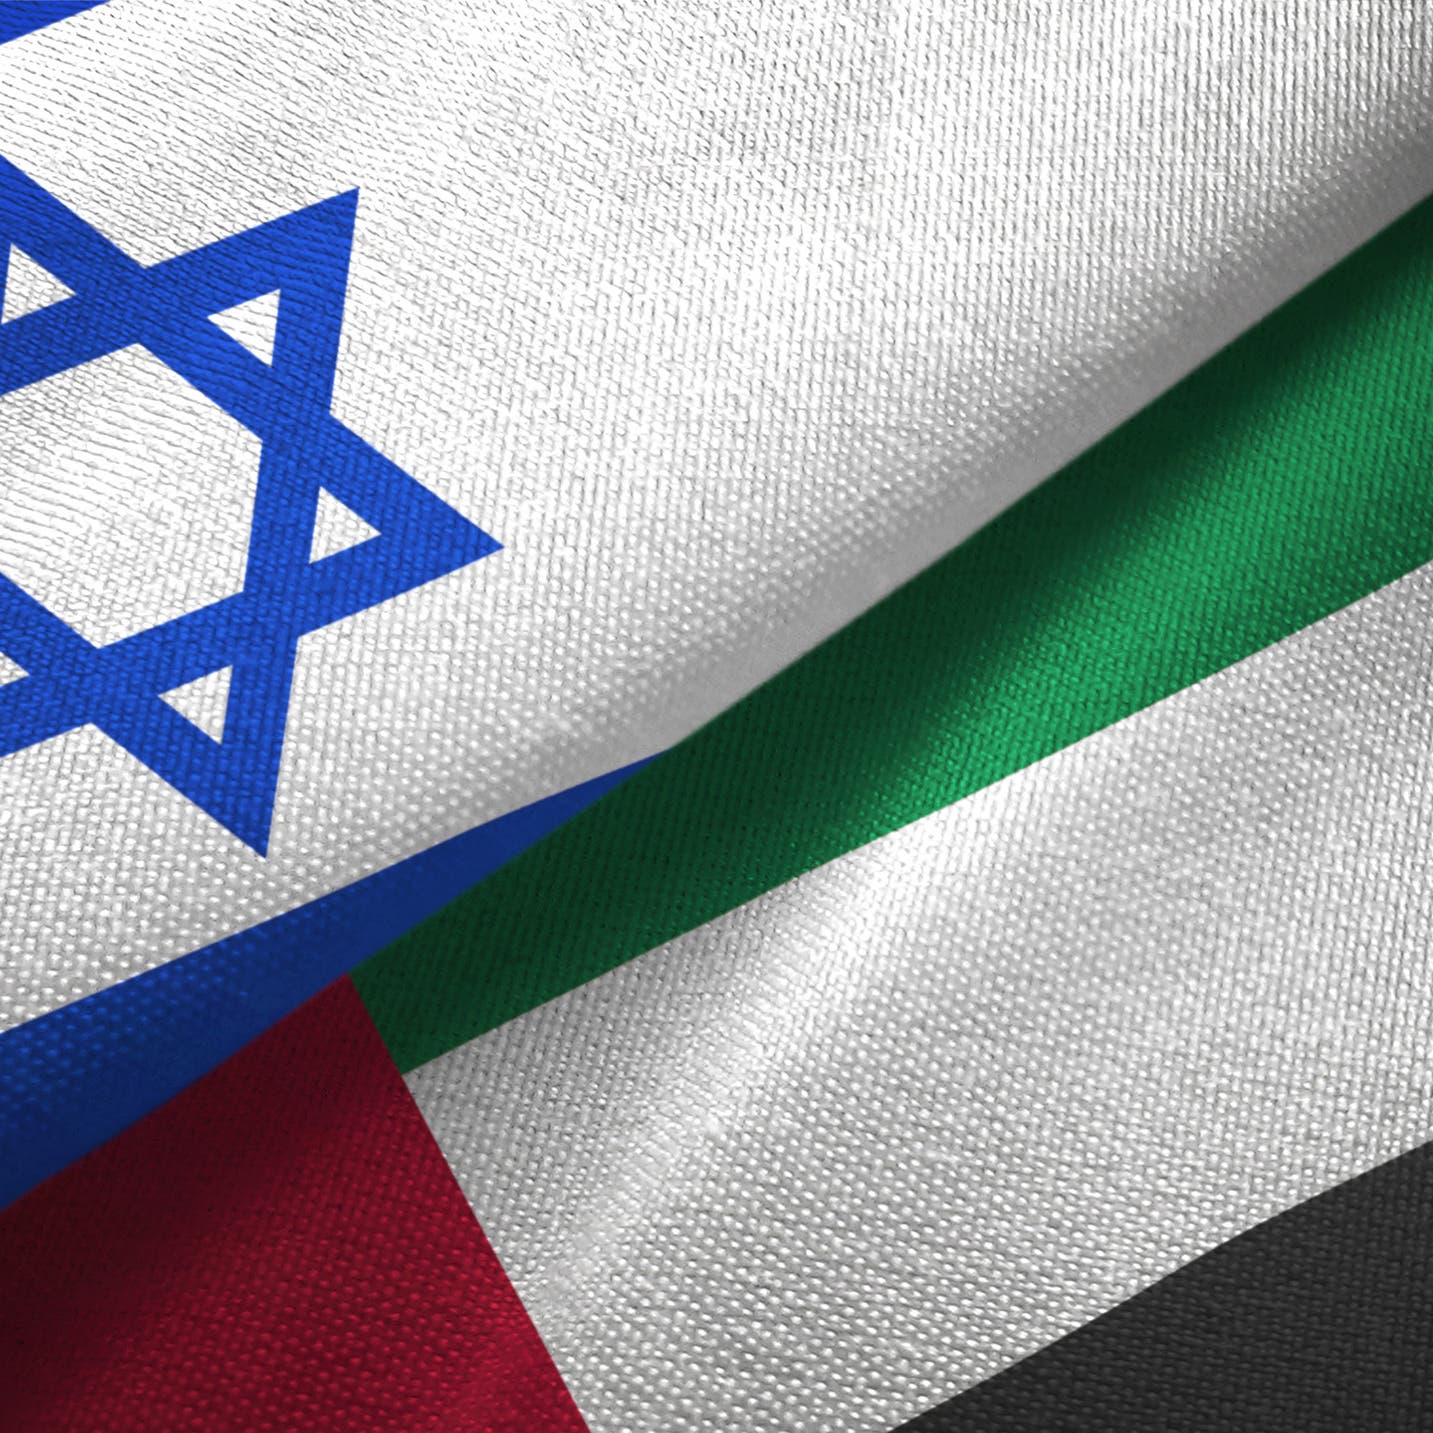 إسرائيل: نتوقع مستقبلاً إيجابياً للعلاقة مع الإمارات